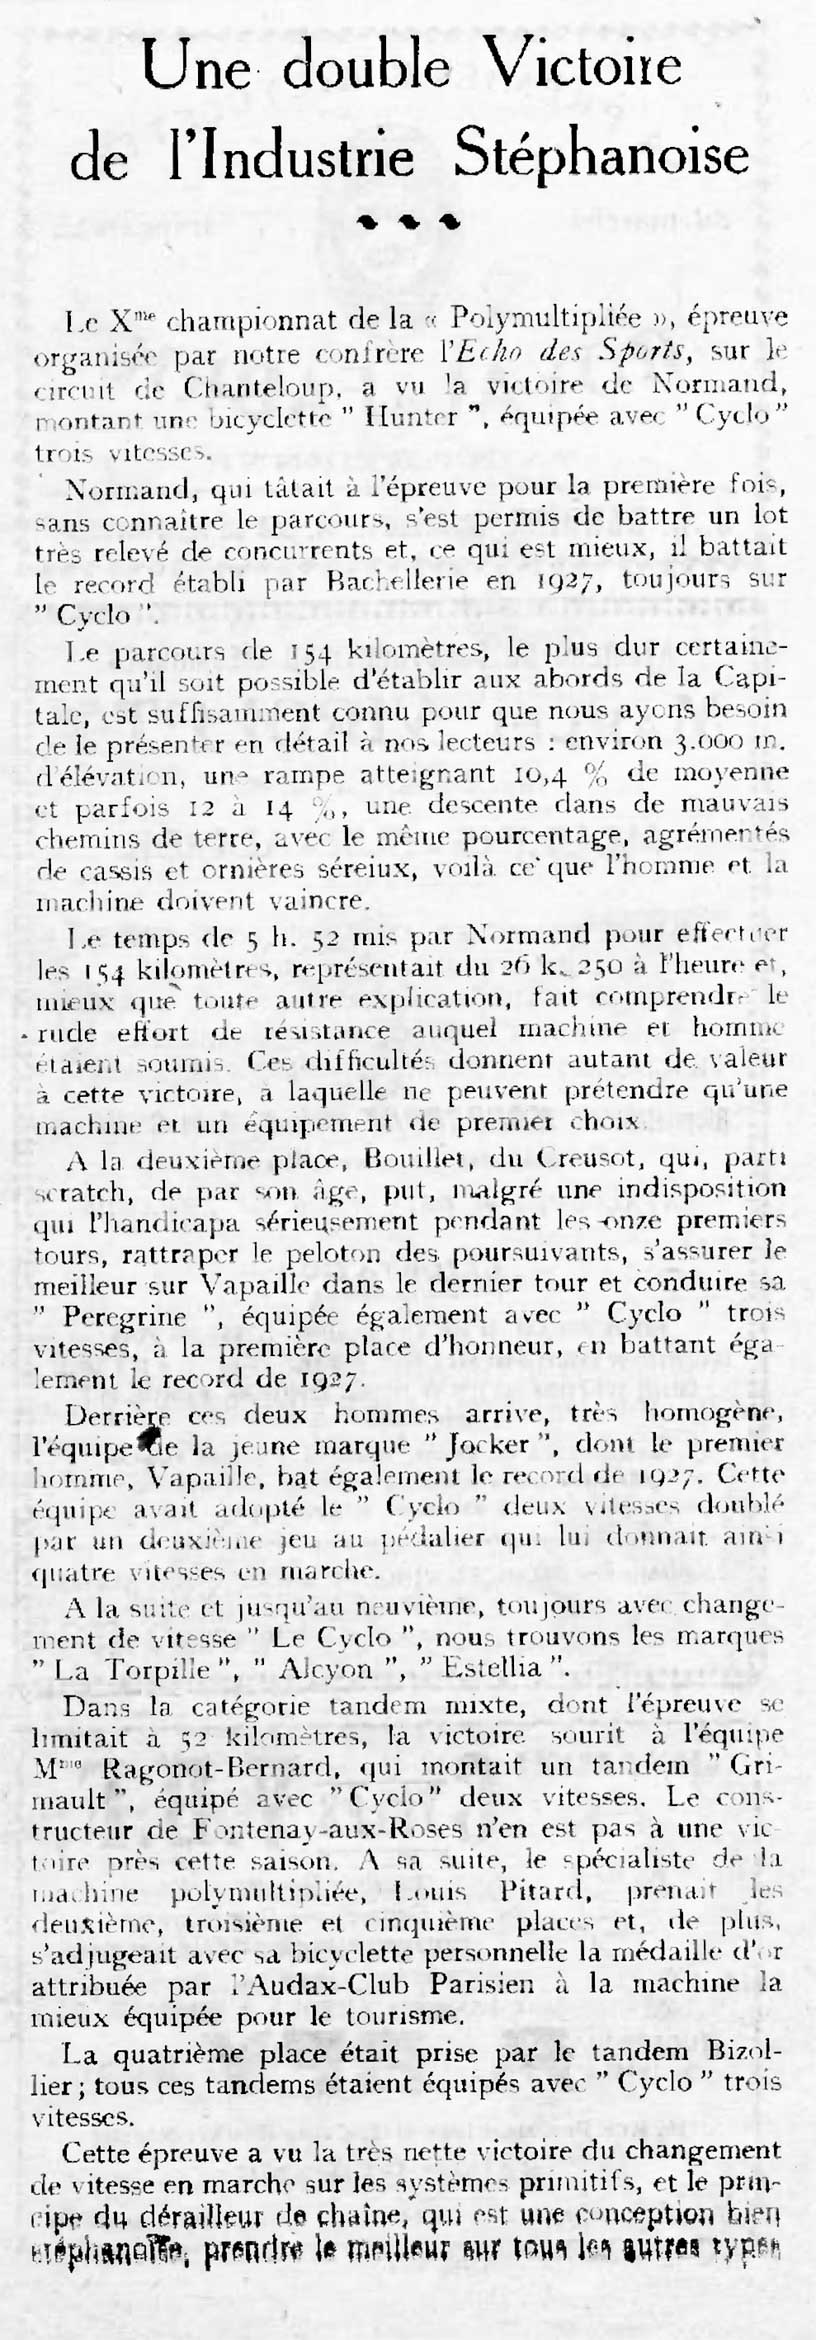 L'Industrie des Cycles et Automobiles May 1928 - Une Double Victoire scan 1 main image